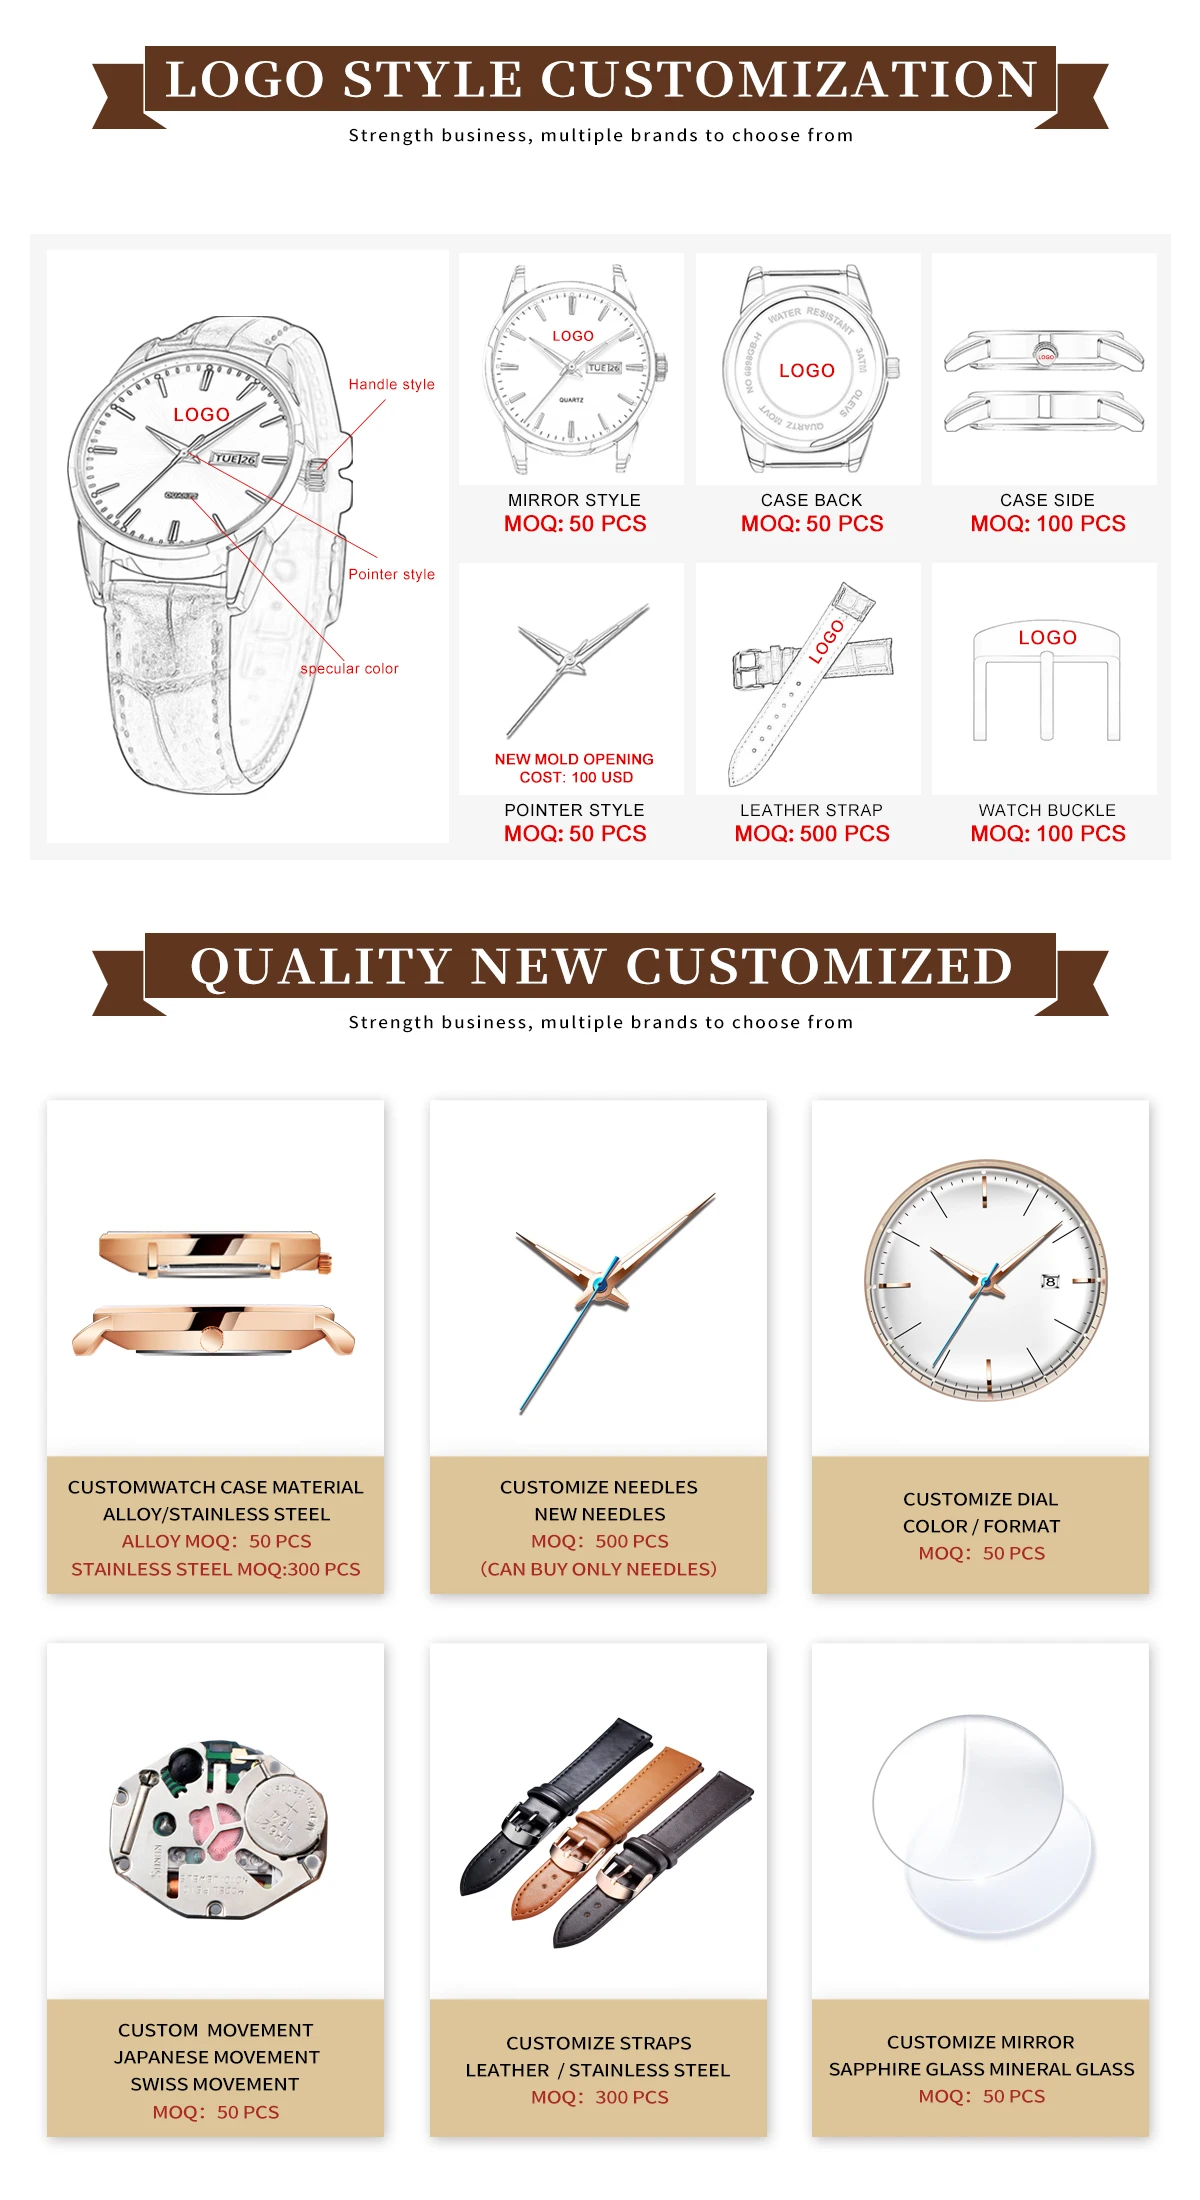 JSDUN wristwatch original | GoldYSofT Sale Online